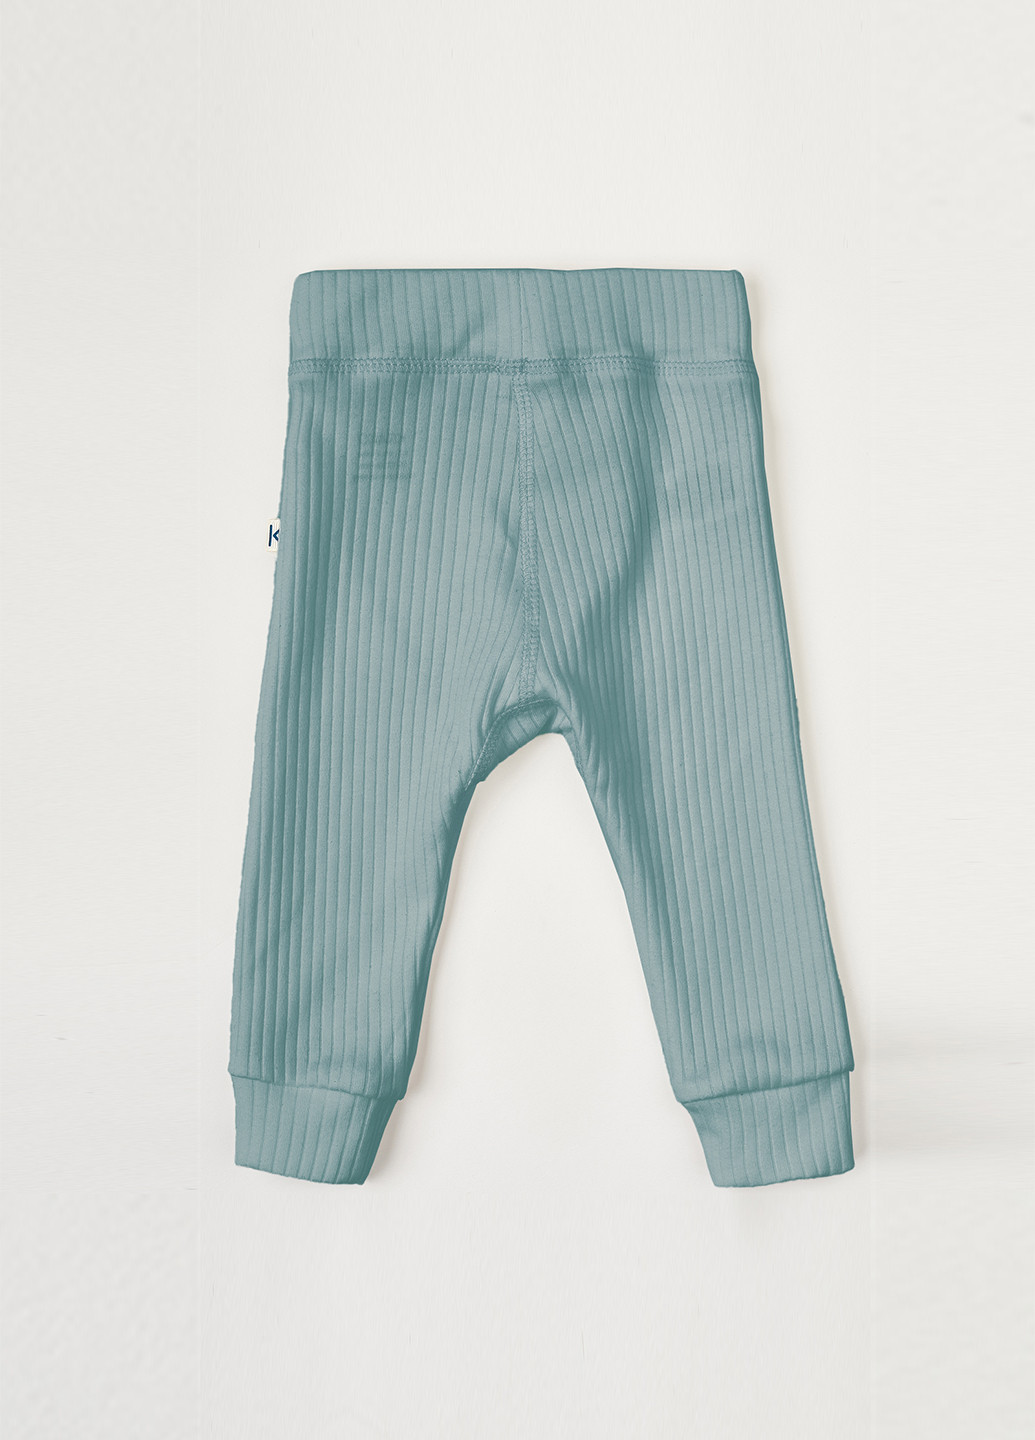 KRAKO штаны полоска зеленые для малышей зеленый повседневный хлопок производство - Украина